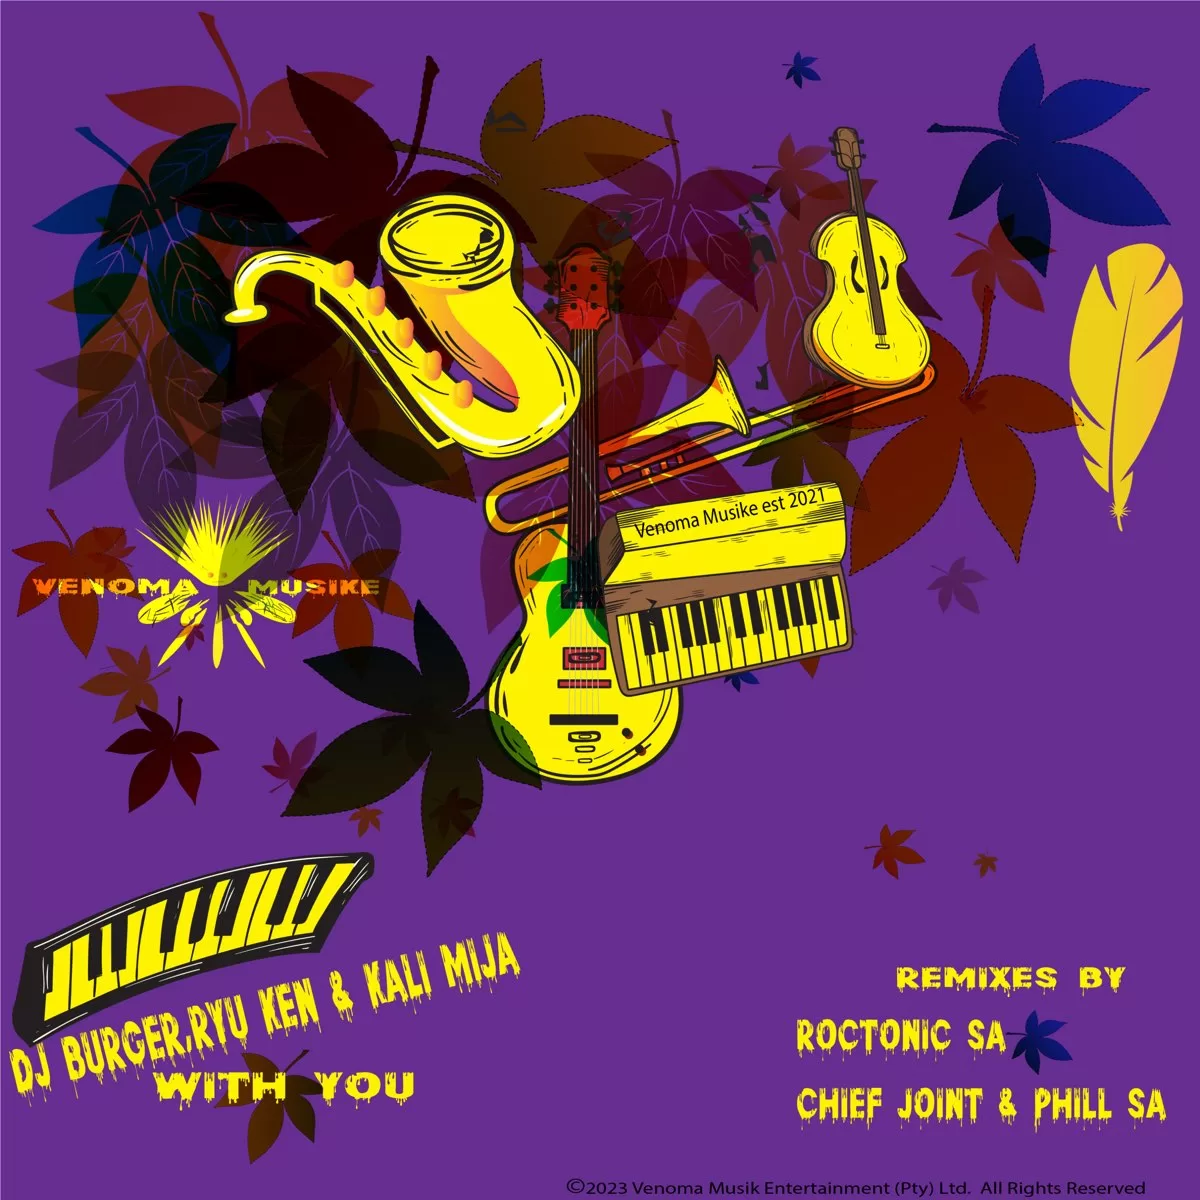 DJ Burger, Ryu Ken & Kali Mija – With You (Original Mix)